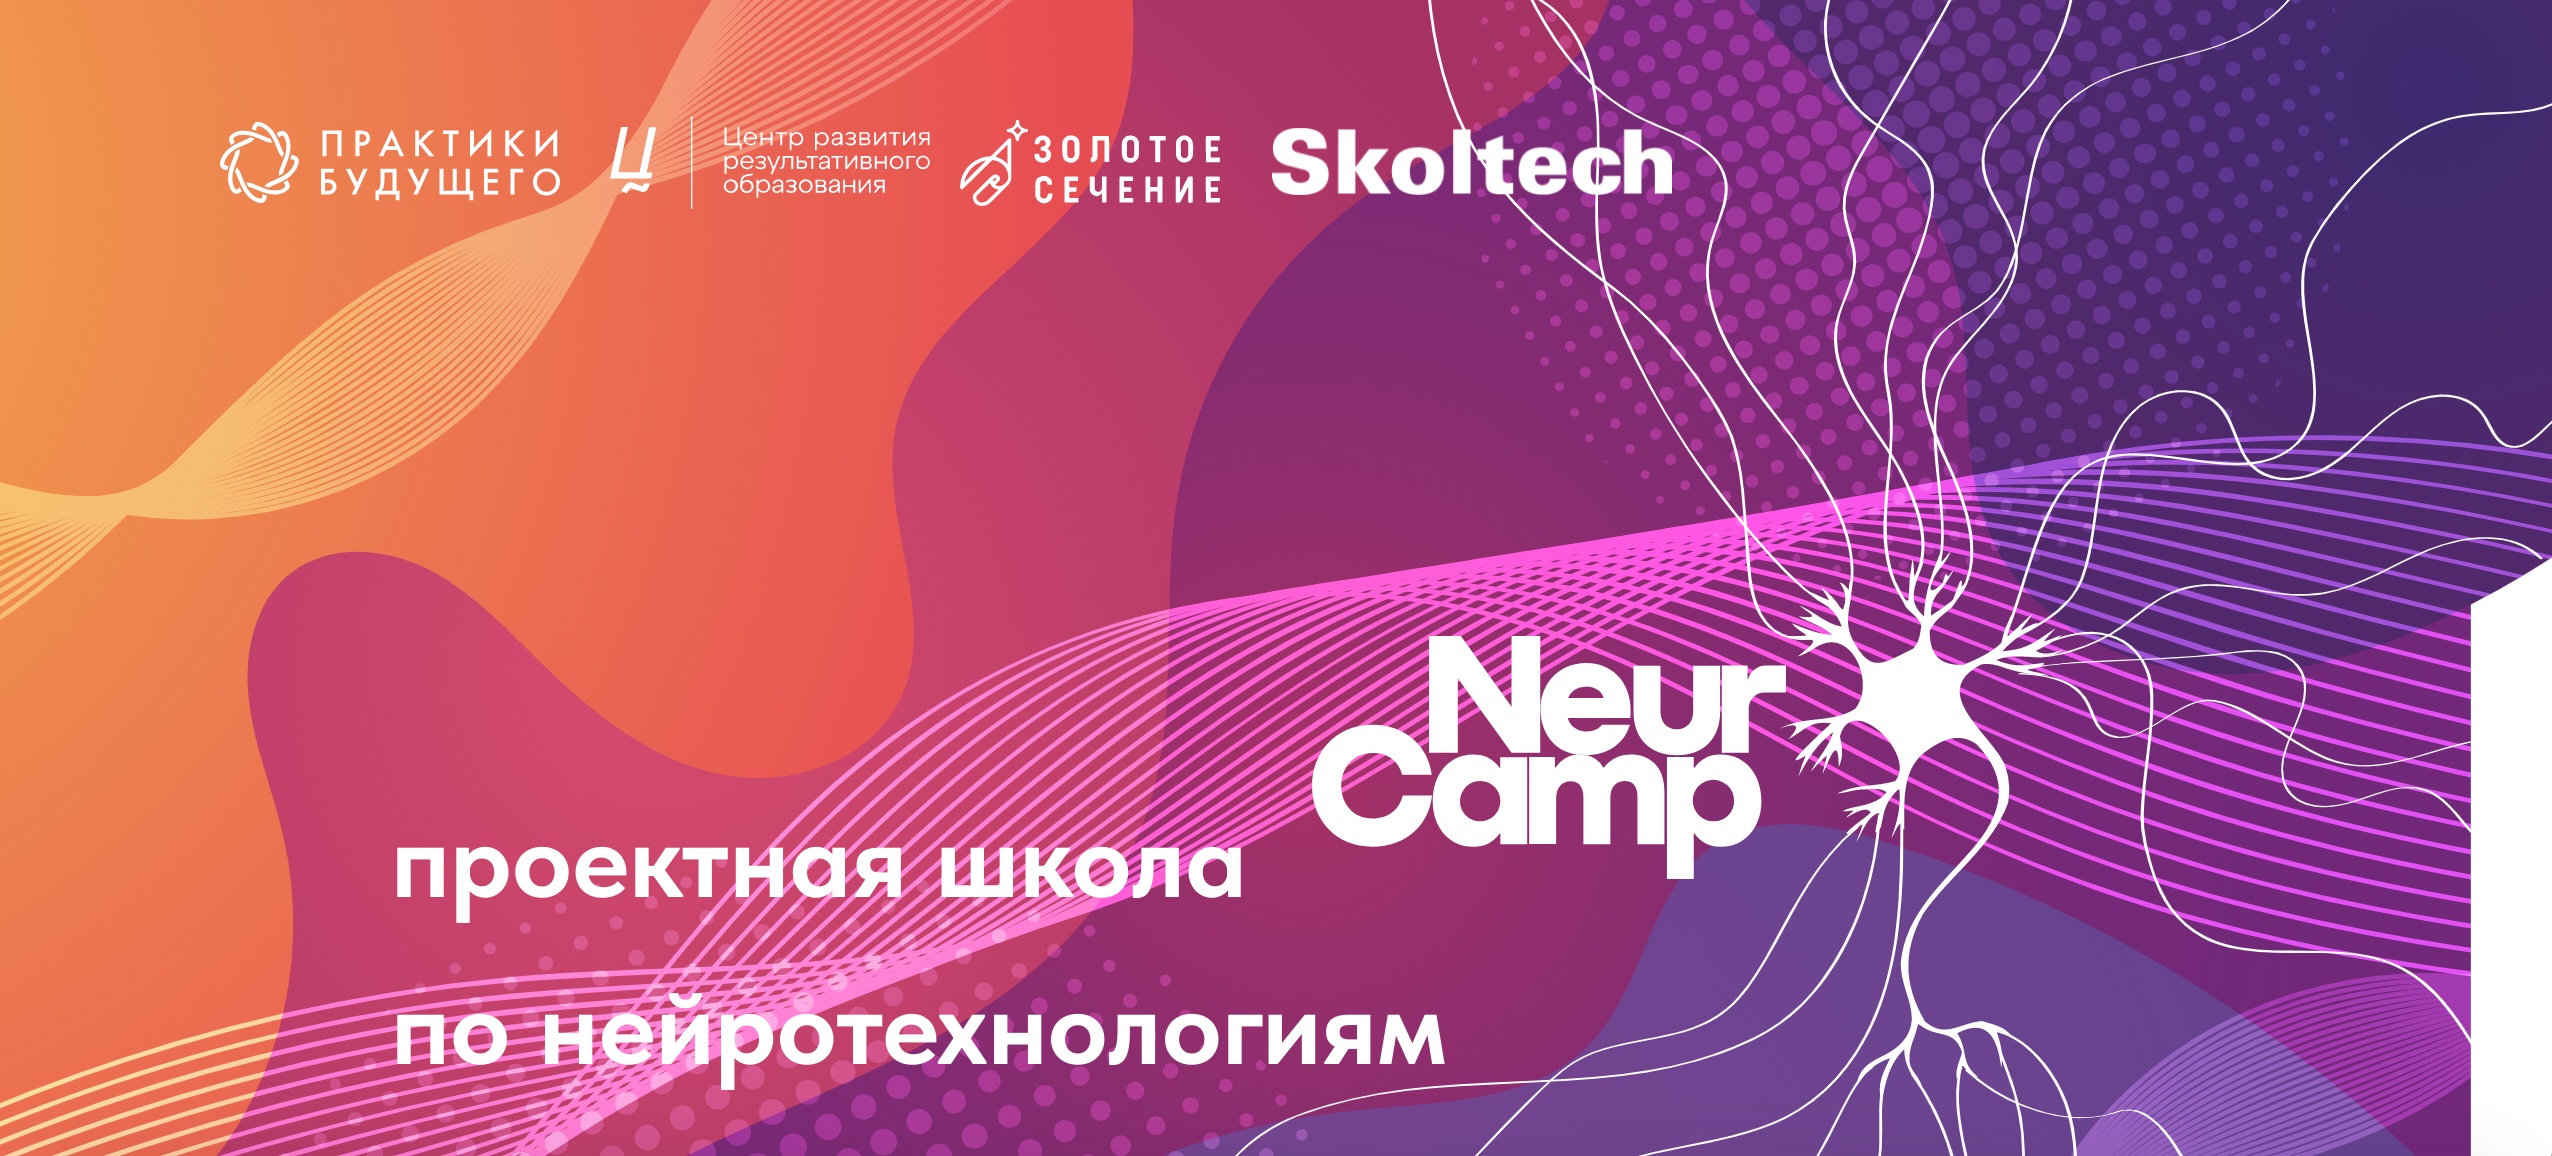 На Урале кружковое движение НТИ проведет NeuroCamp для школьников